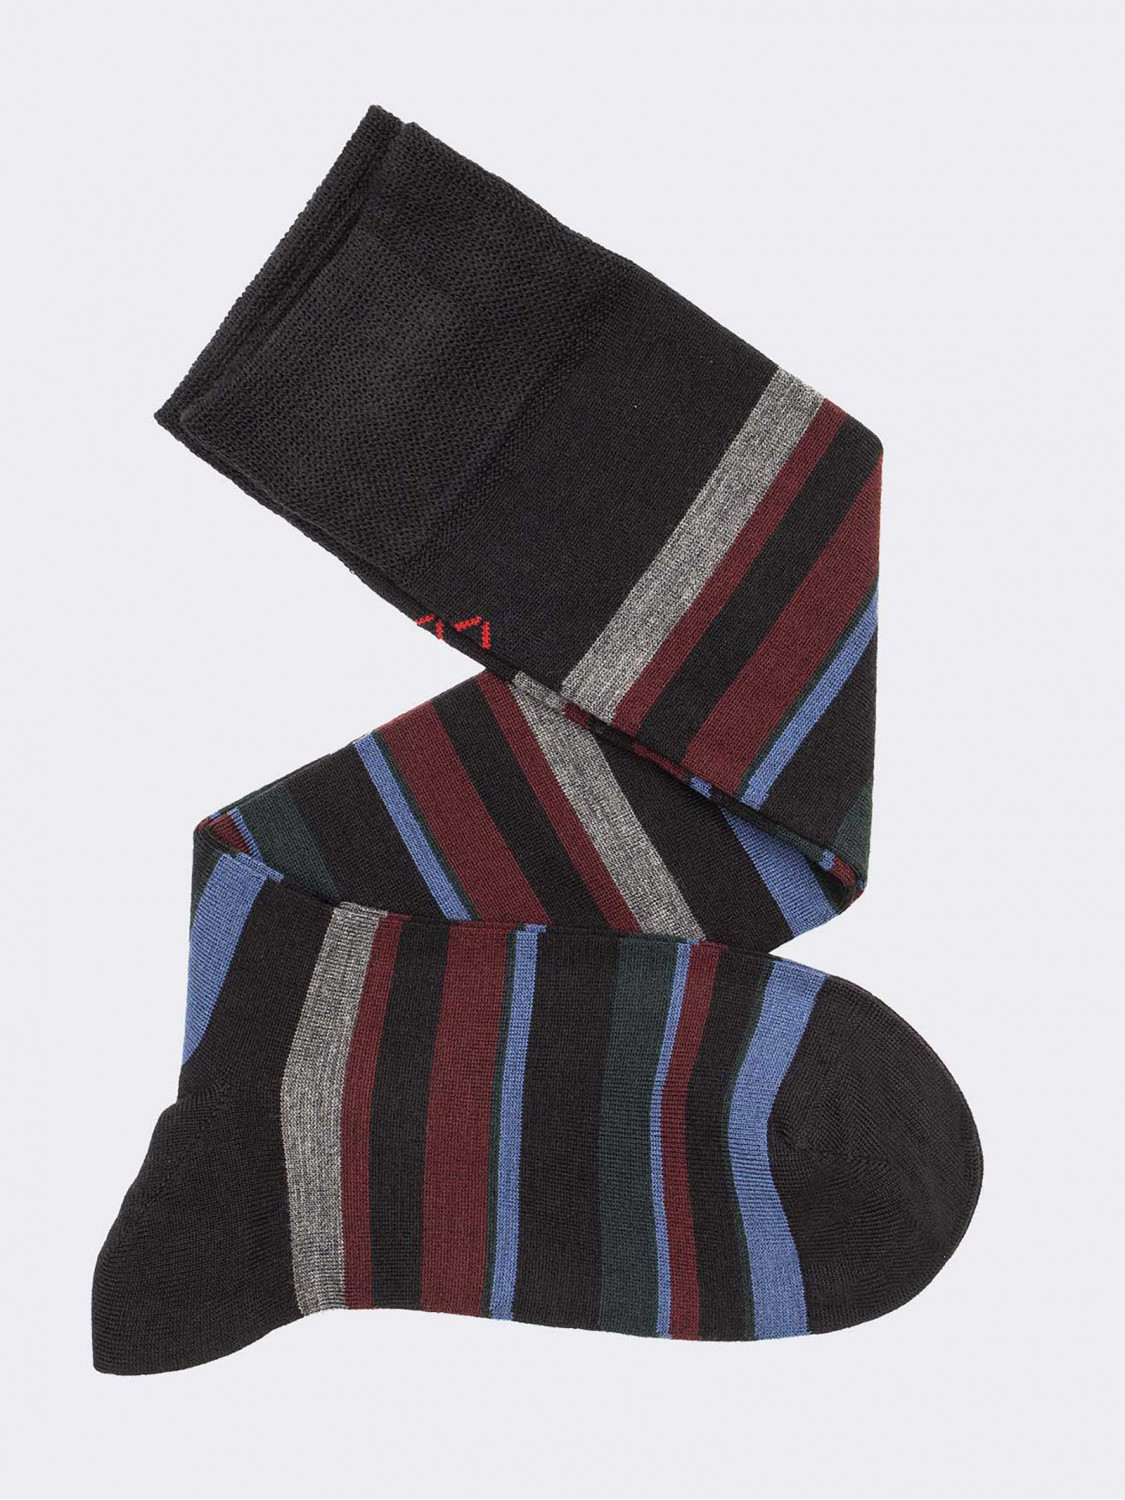 Men’s knee-high socks striped pattern in wool